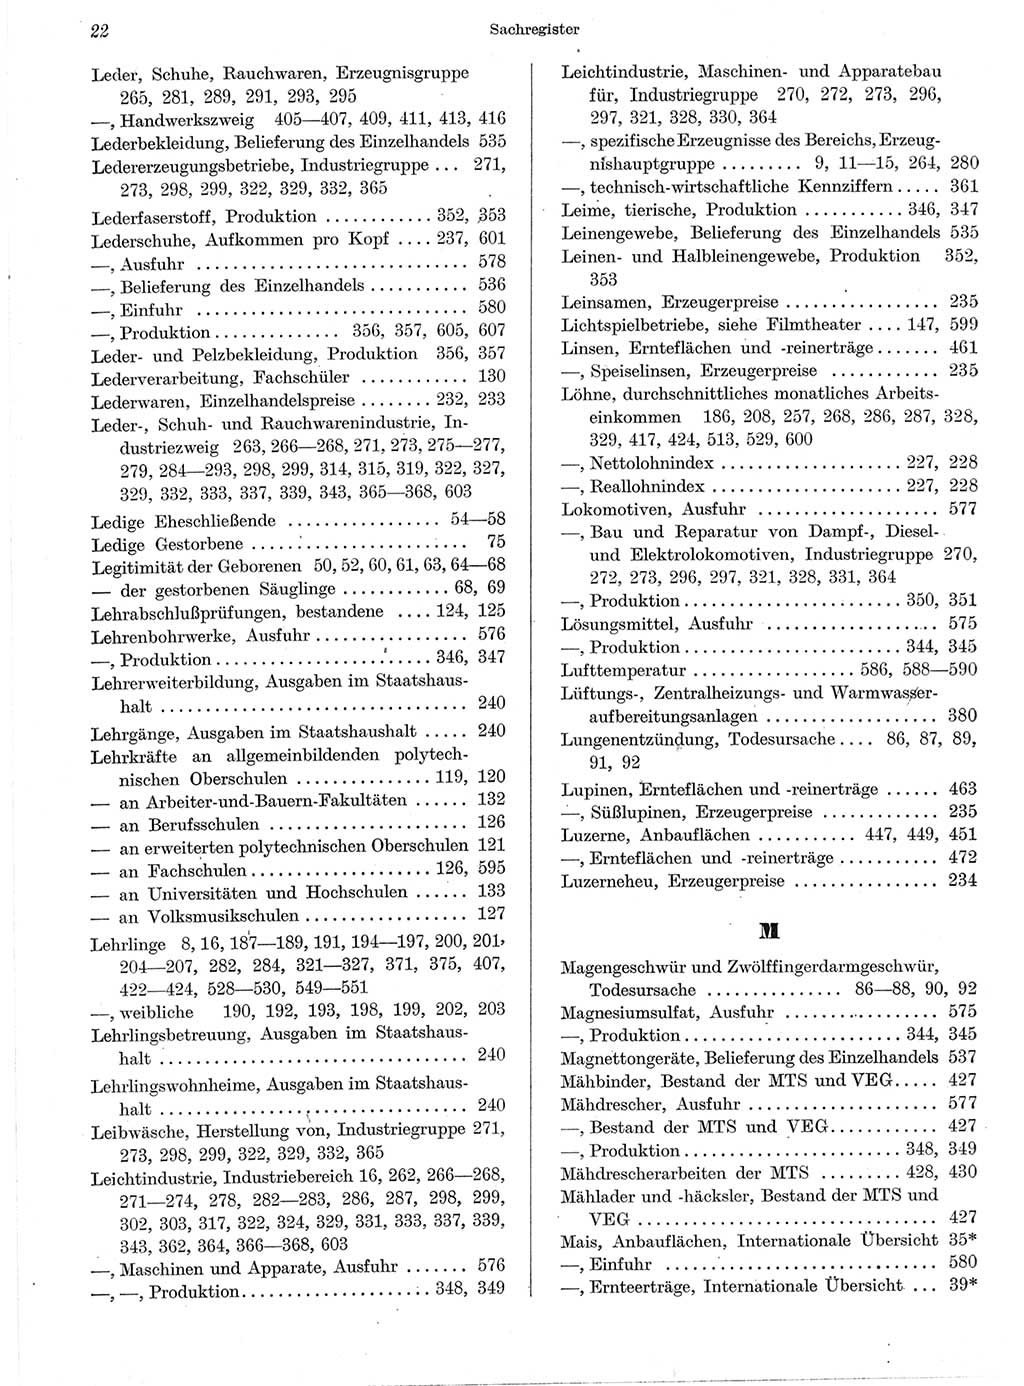 Statistisches Jahrbuch der Deutschen Demokratischen Republik (DDR) 1959, Seite 22 (Stat. Jb. DDR 1959, S. 22)